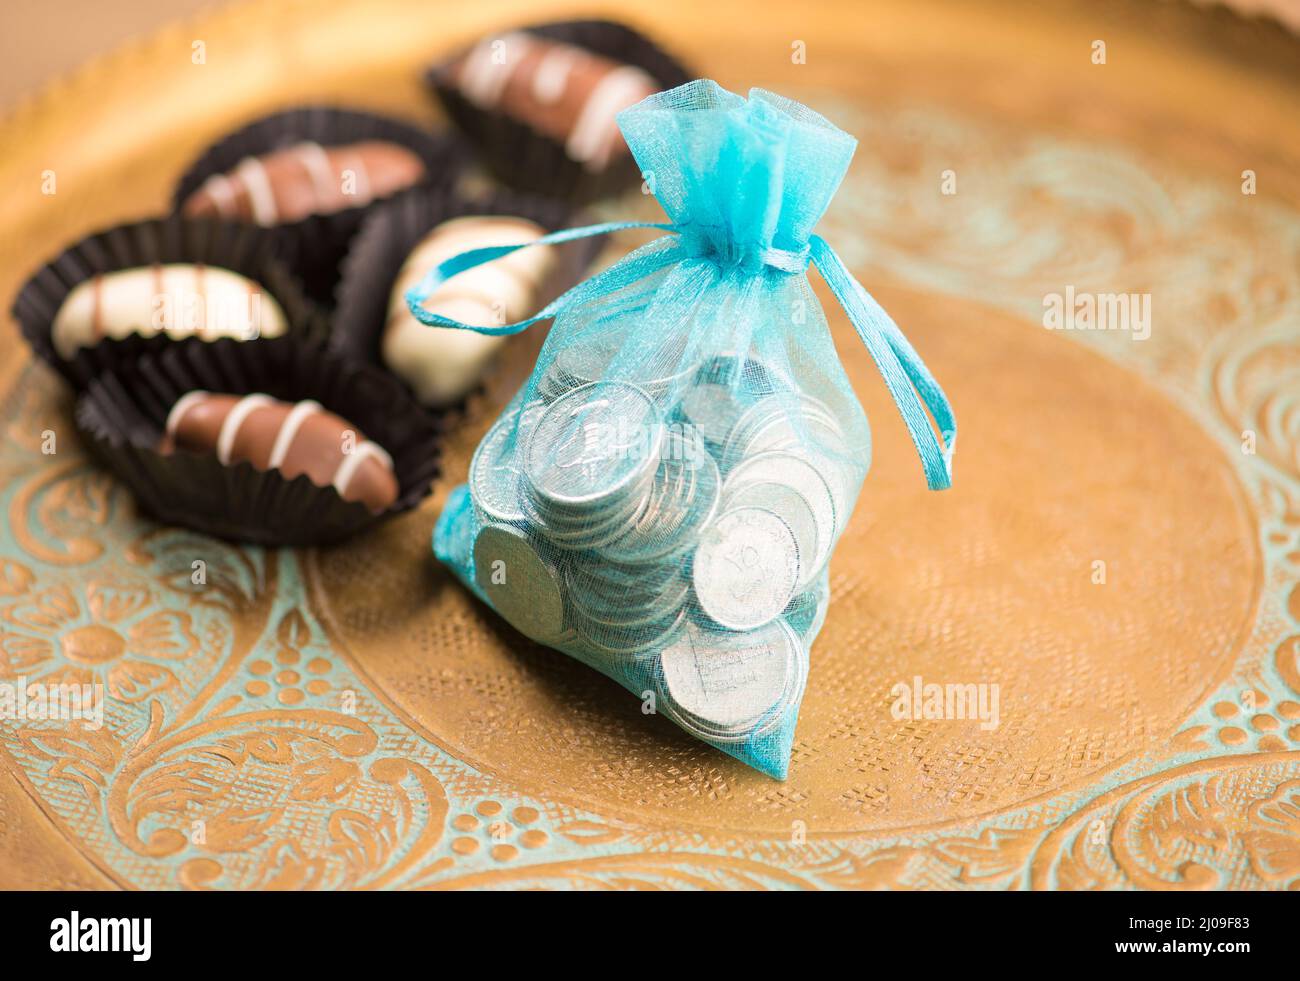 VAE-Dirham-Münzen in einem schicken Beutel mit Dattelpralinen. Geldspenden oder Wohltätigkeitsorganisationen anlässlich des Eid-Festivals. Stockfoto